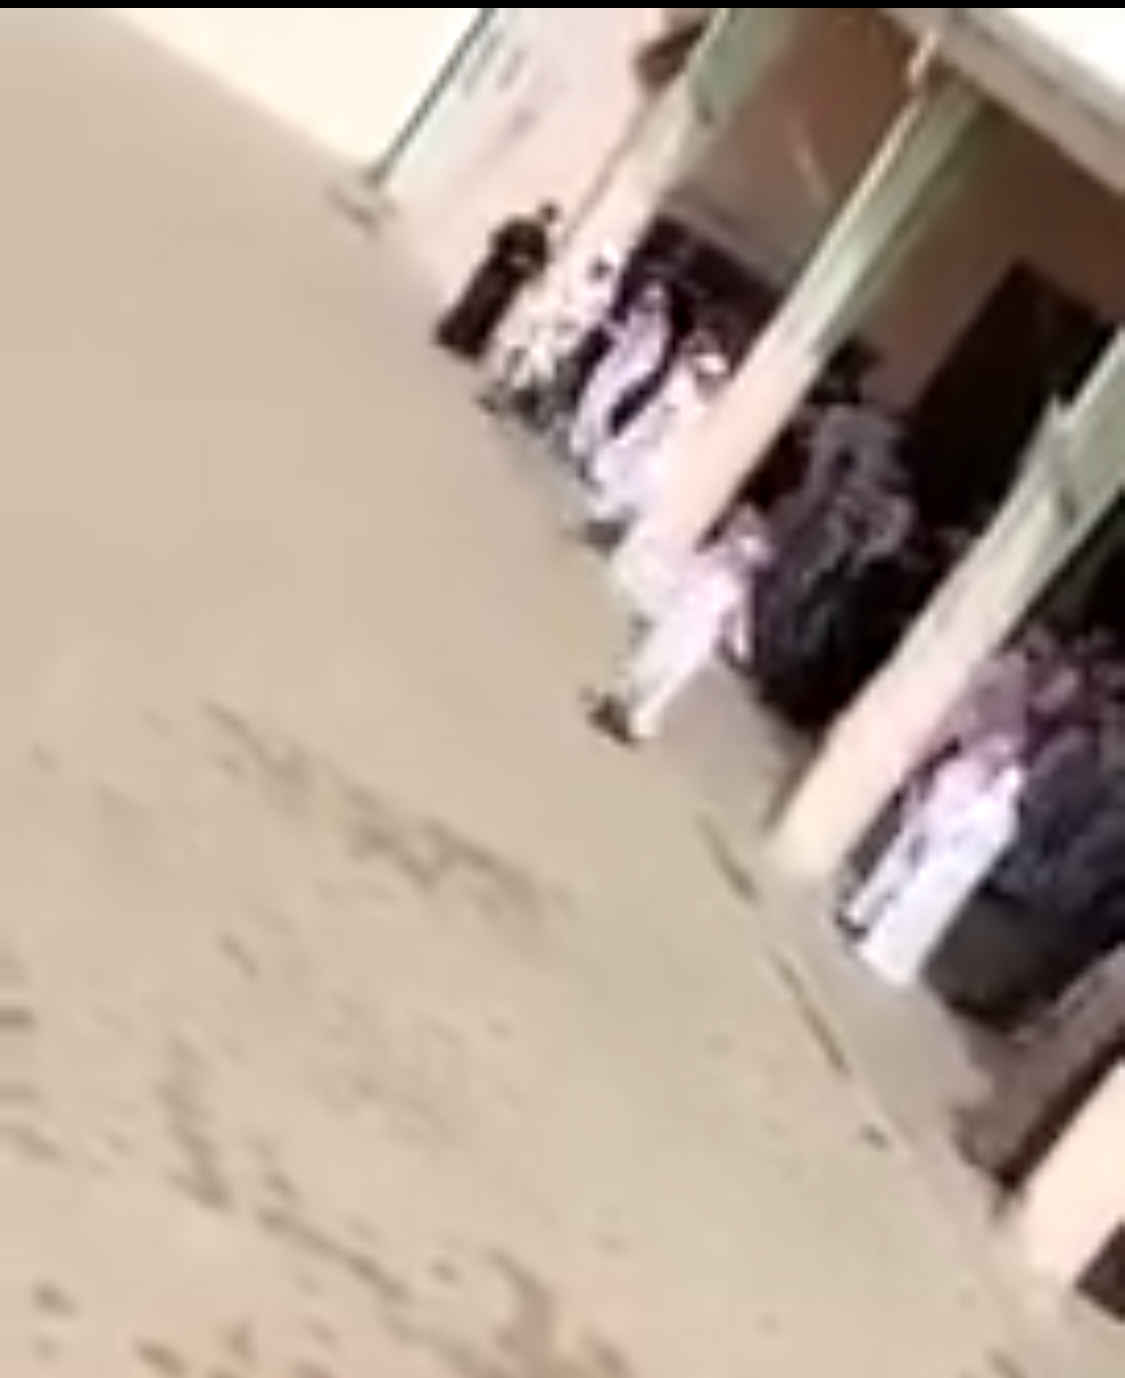 بالفيديو.. “المواطن” تكشف حقيقة ضرب معلم طلابه بخميس مشيط